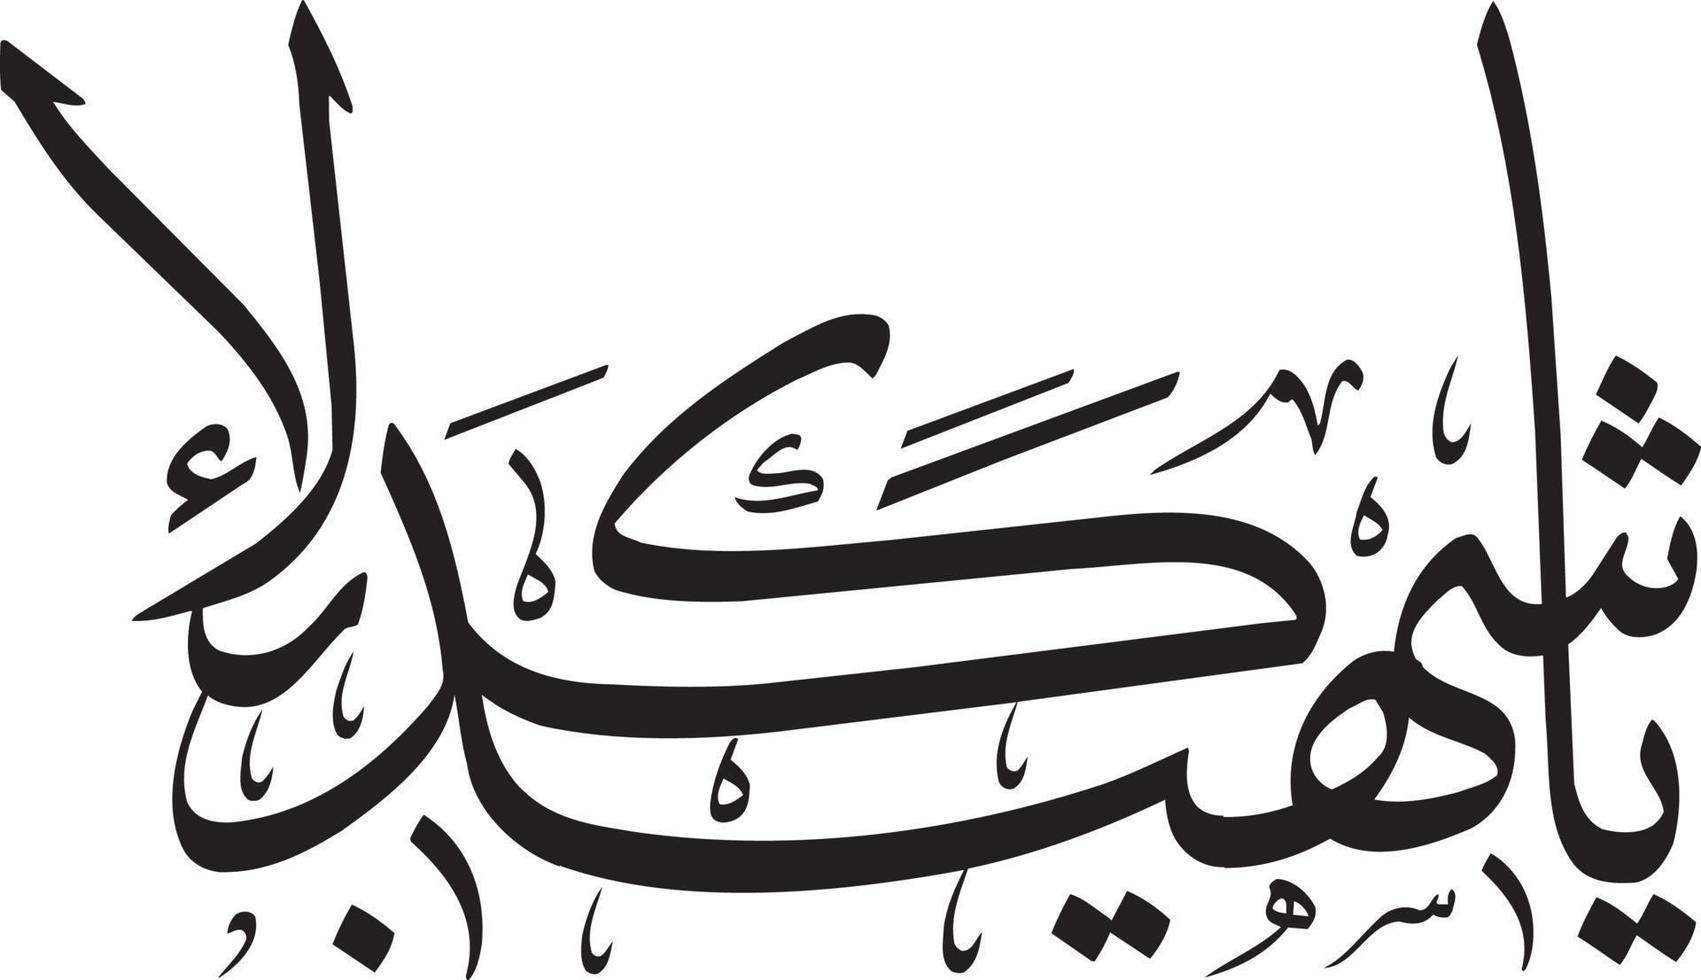 ya sheed krbla caligrafía islámica vector libre